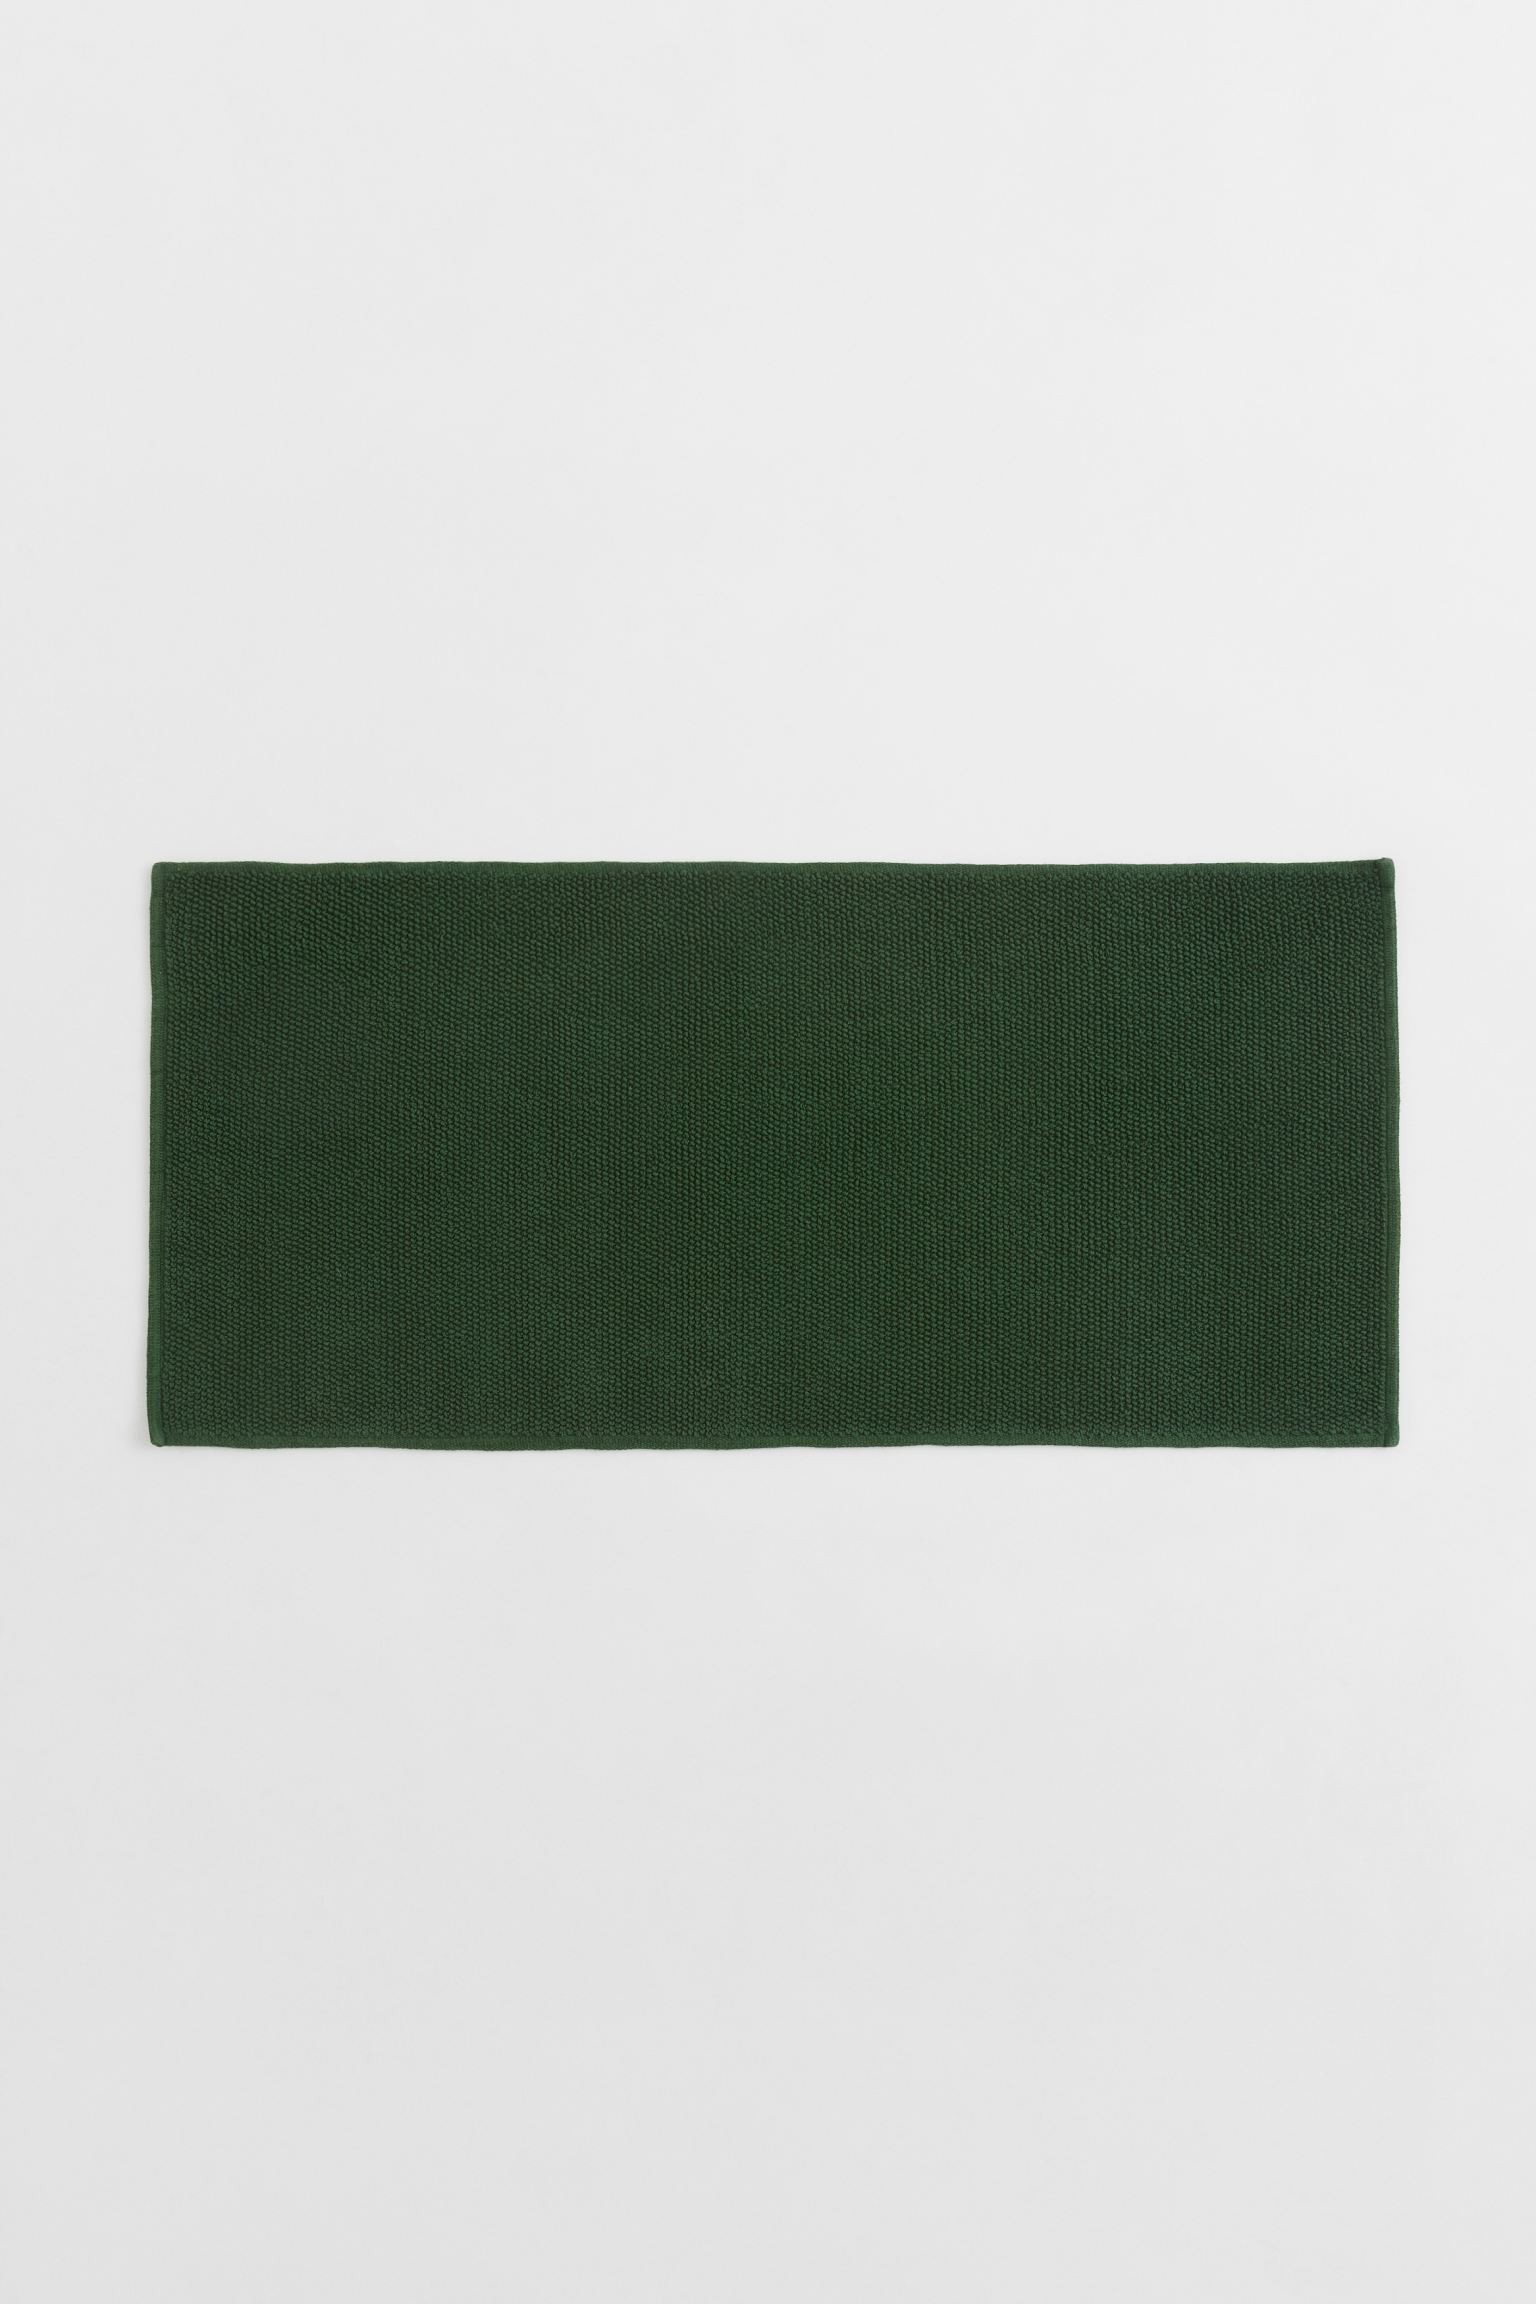 H&M Home Хлопковый коврик для ванной, Темно-зеленый, 60x130 1022532011 1022532011